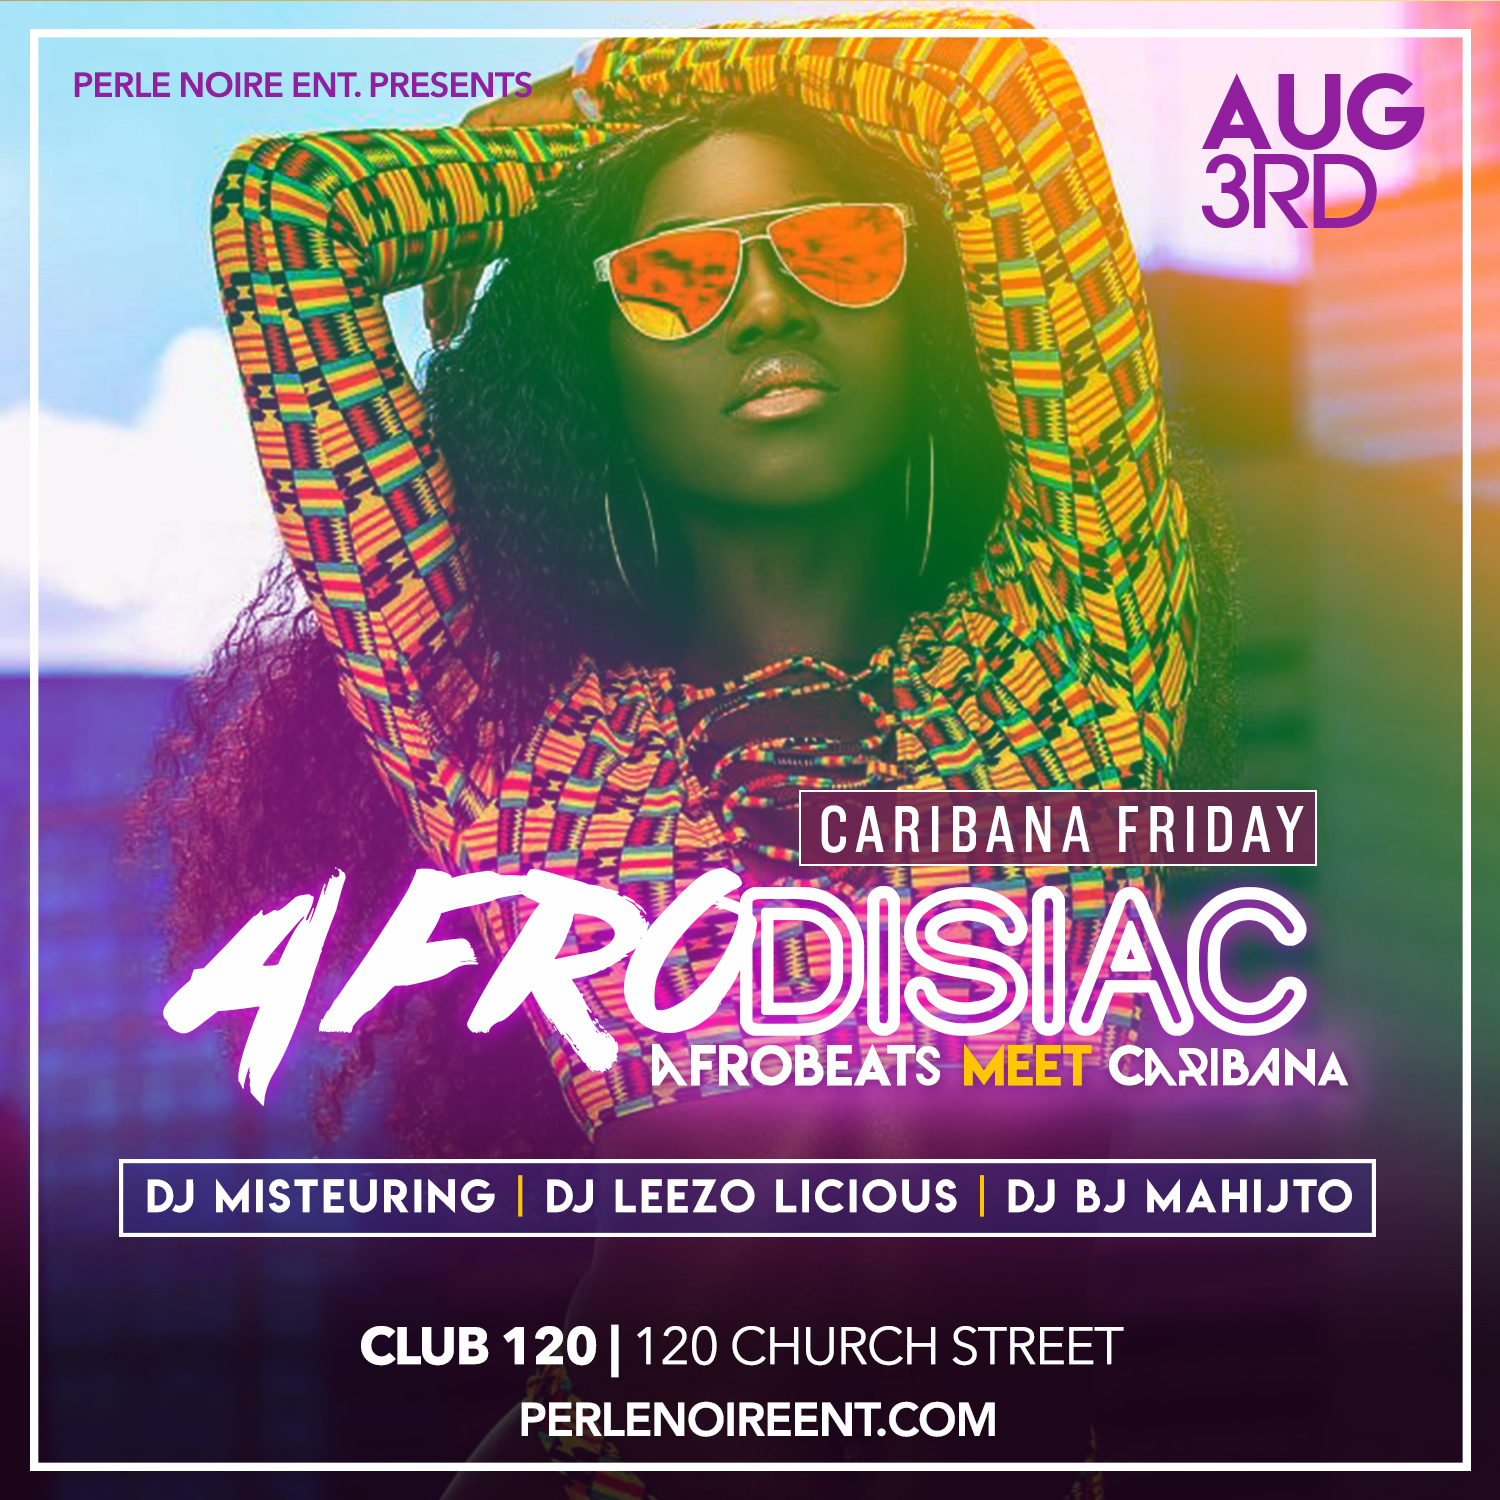 AFRODISIAC - Afrobeats meet Caribana